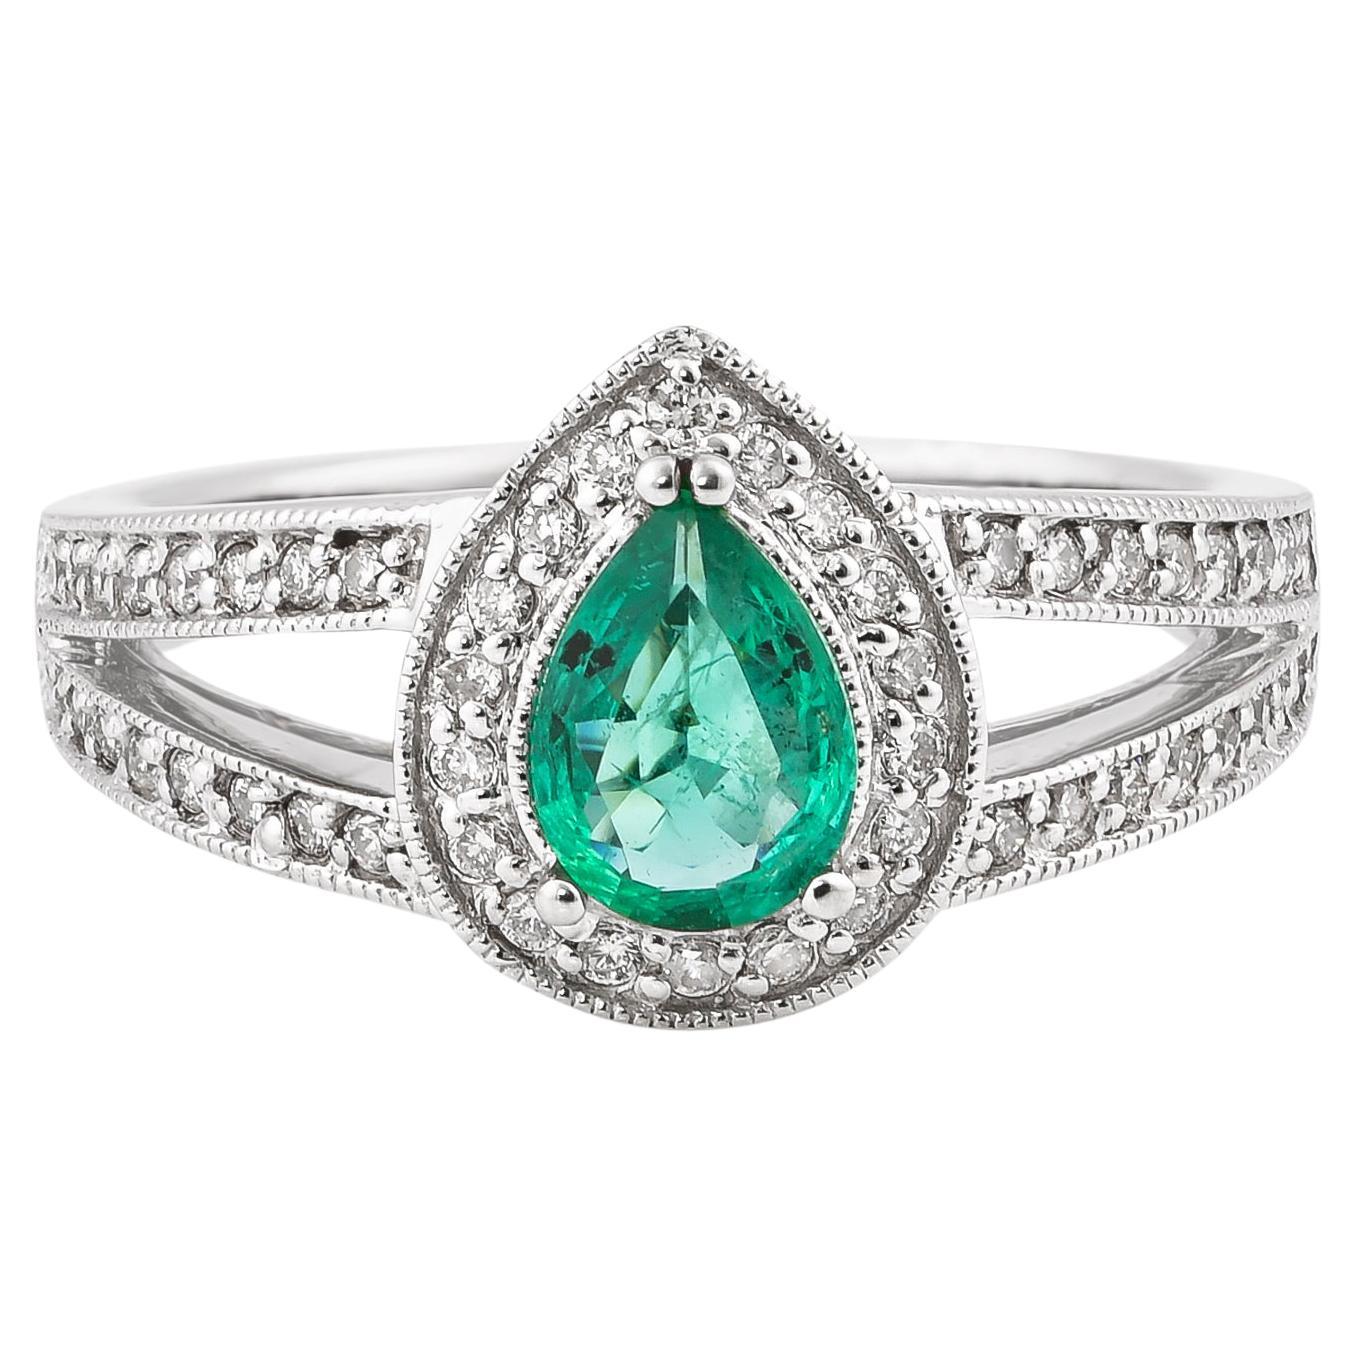 0.53 Carat Emerald and White Diamond Ring in 14 Karat White Gold